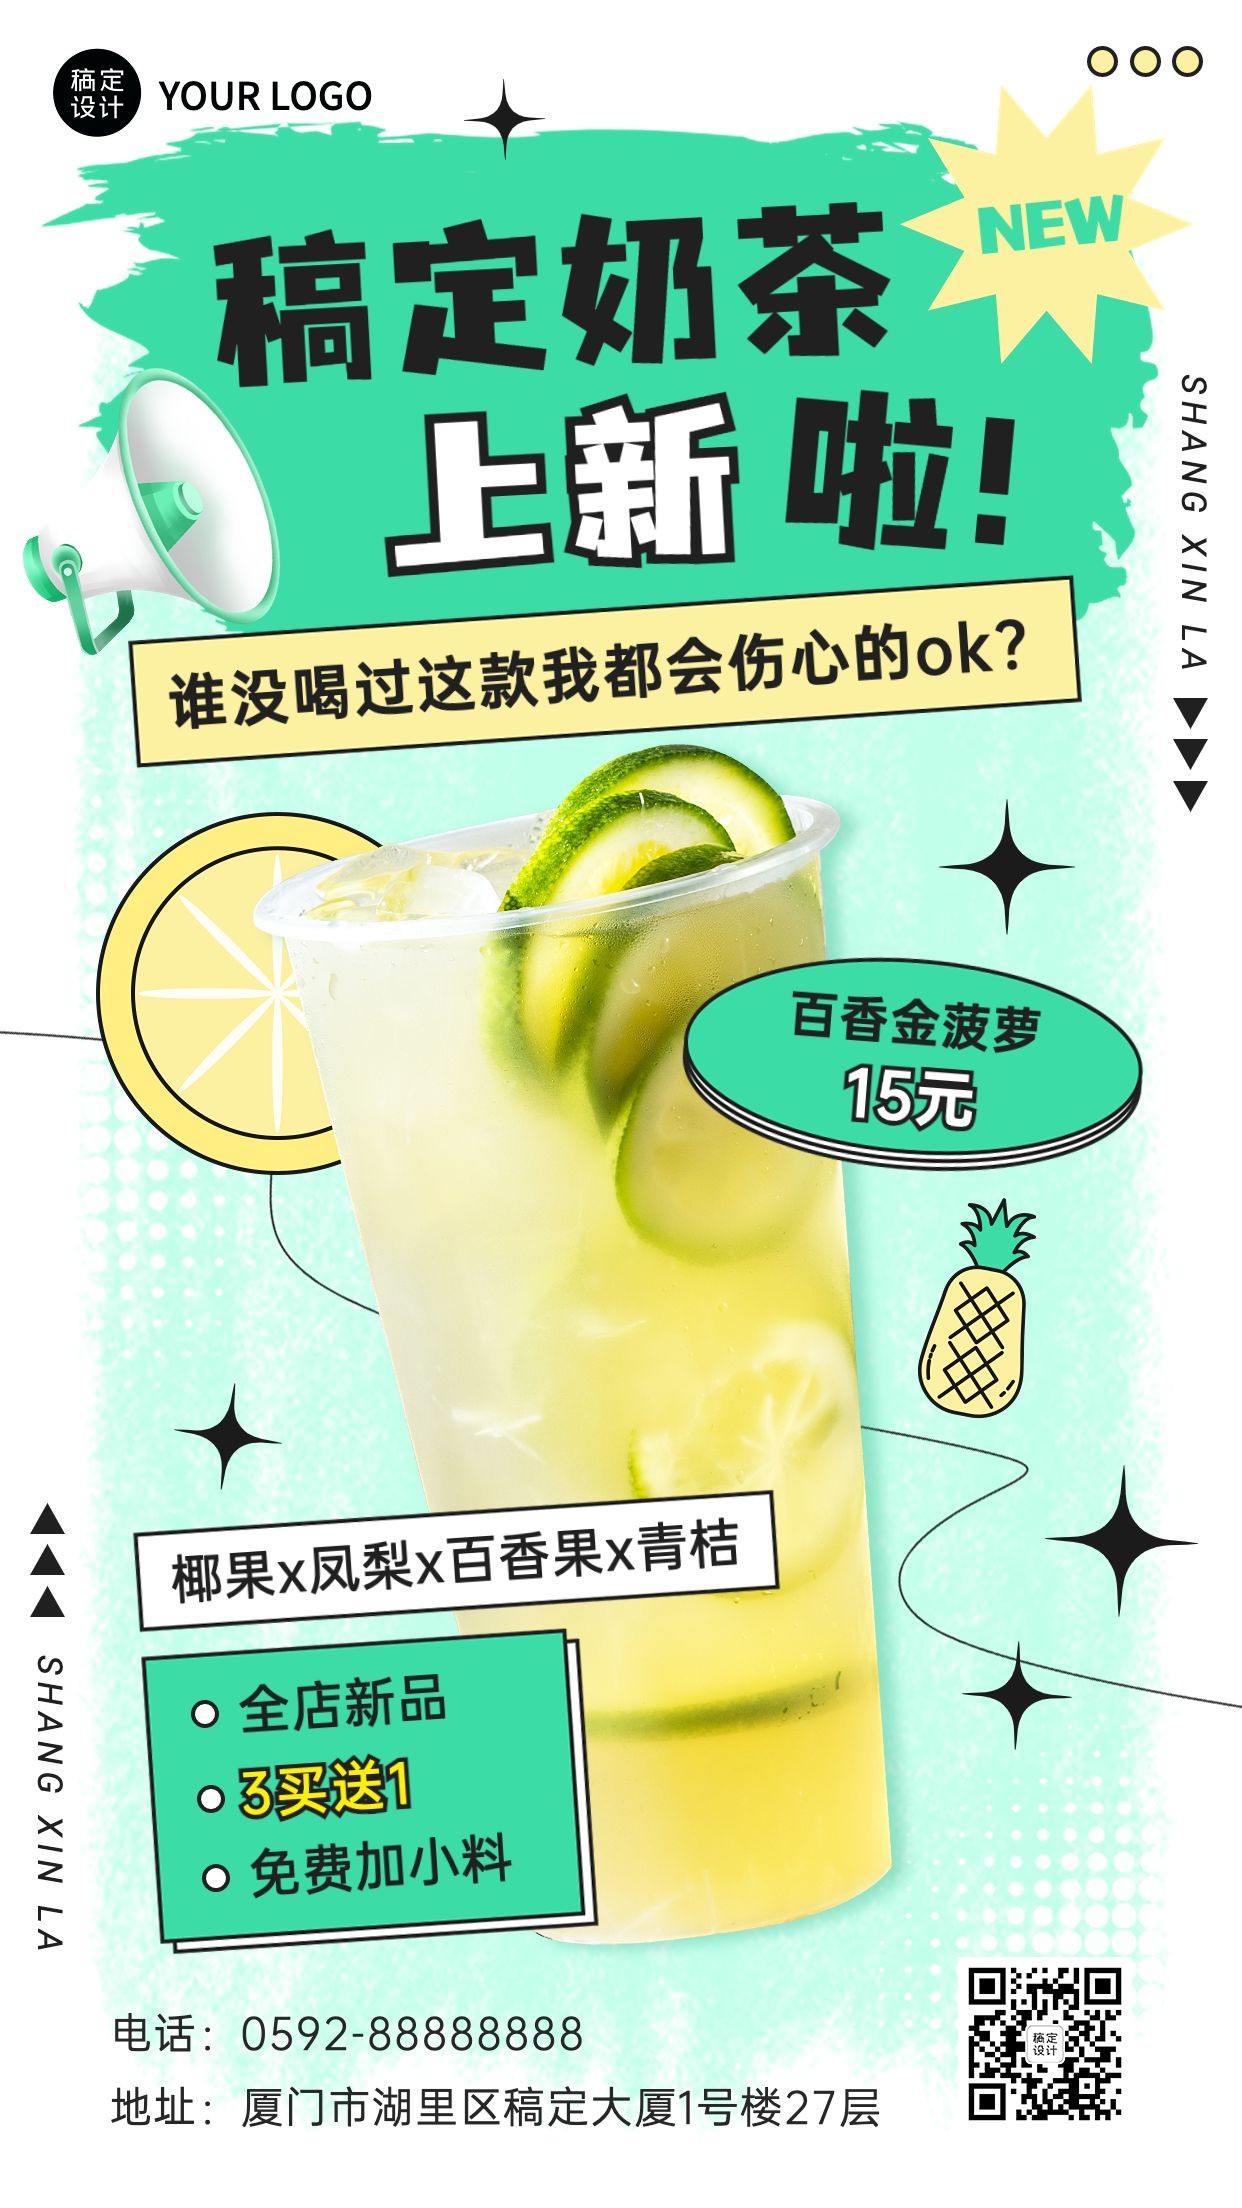 餐饮奶茶饮品新品上市营销手机海报预览效果